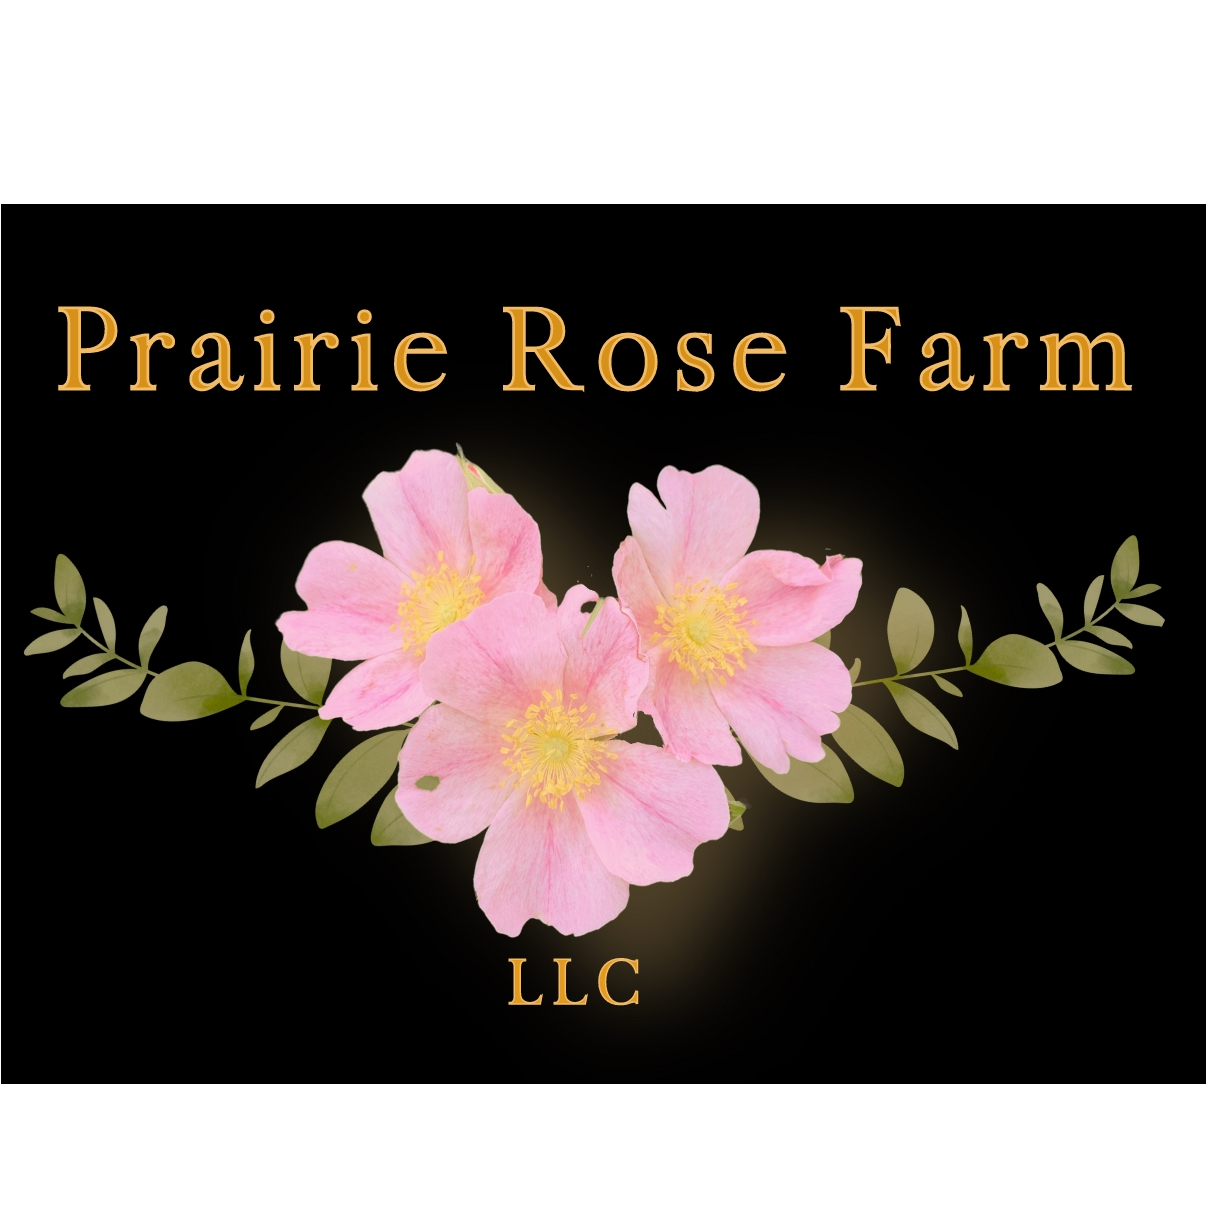 Prairie Rose Farm, LLC